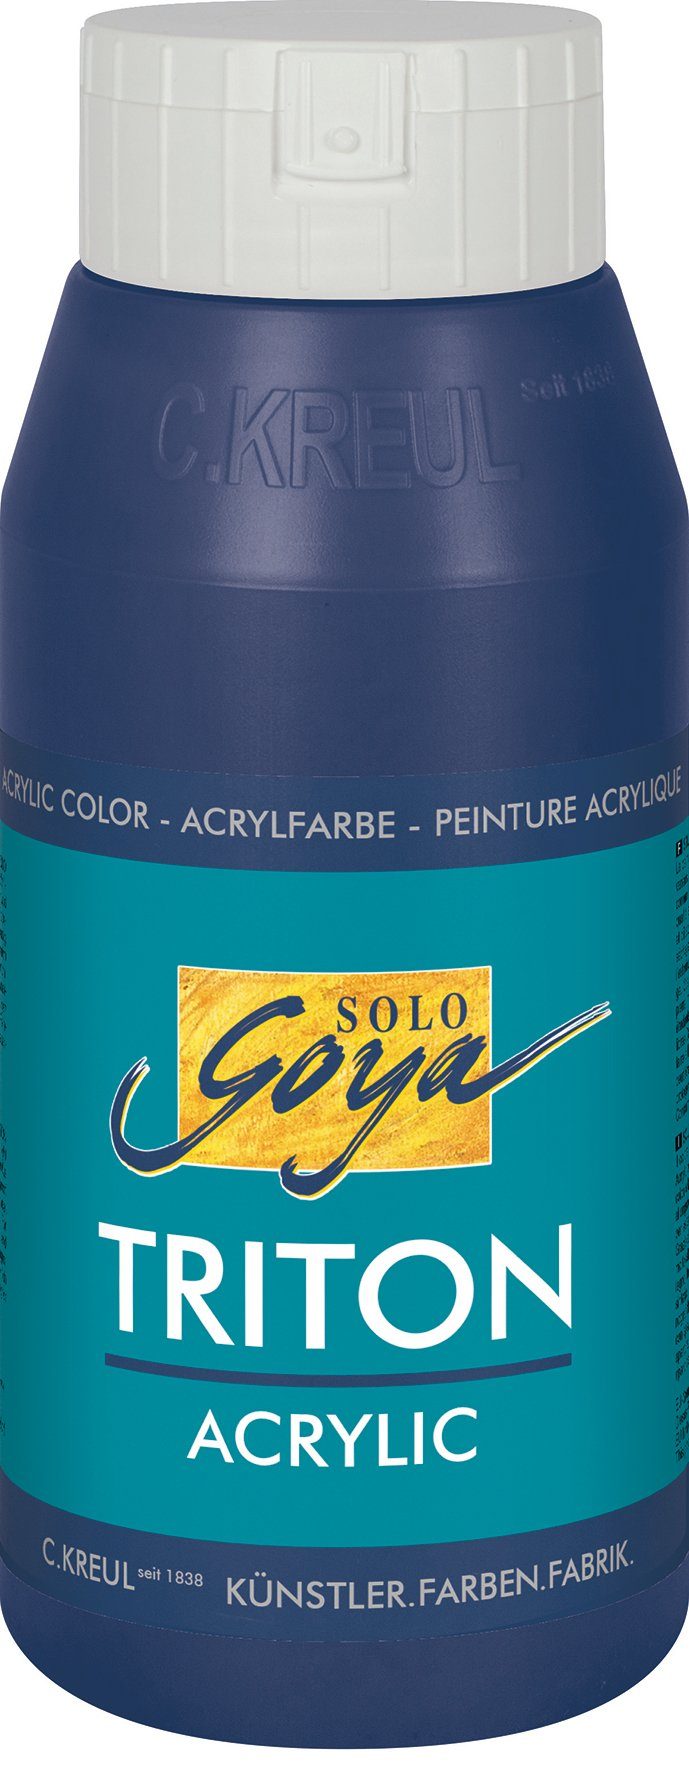 Goya Solo Acrylfarbe Triton 750 Dunkelblau ml Kreul Acrylic,